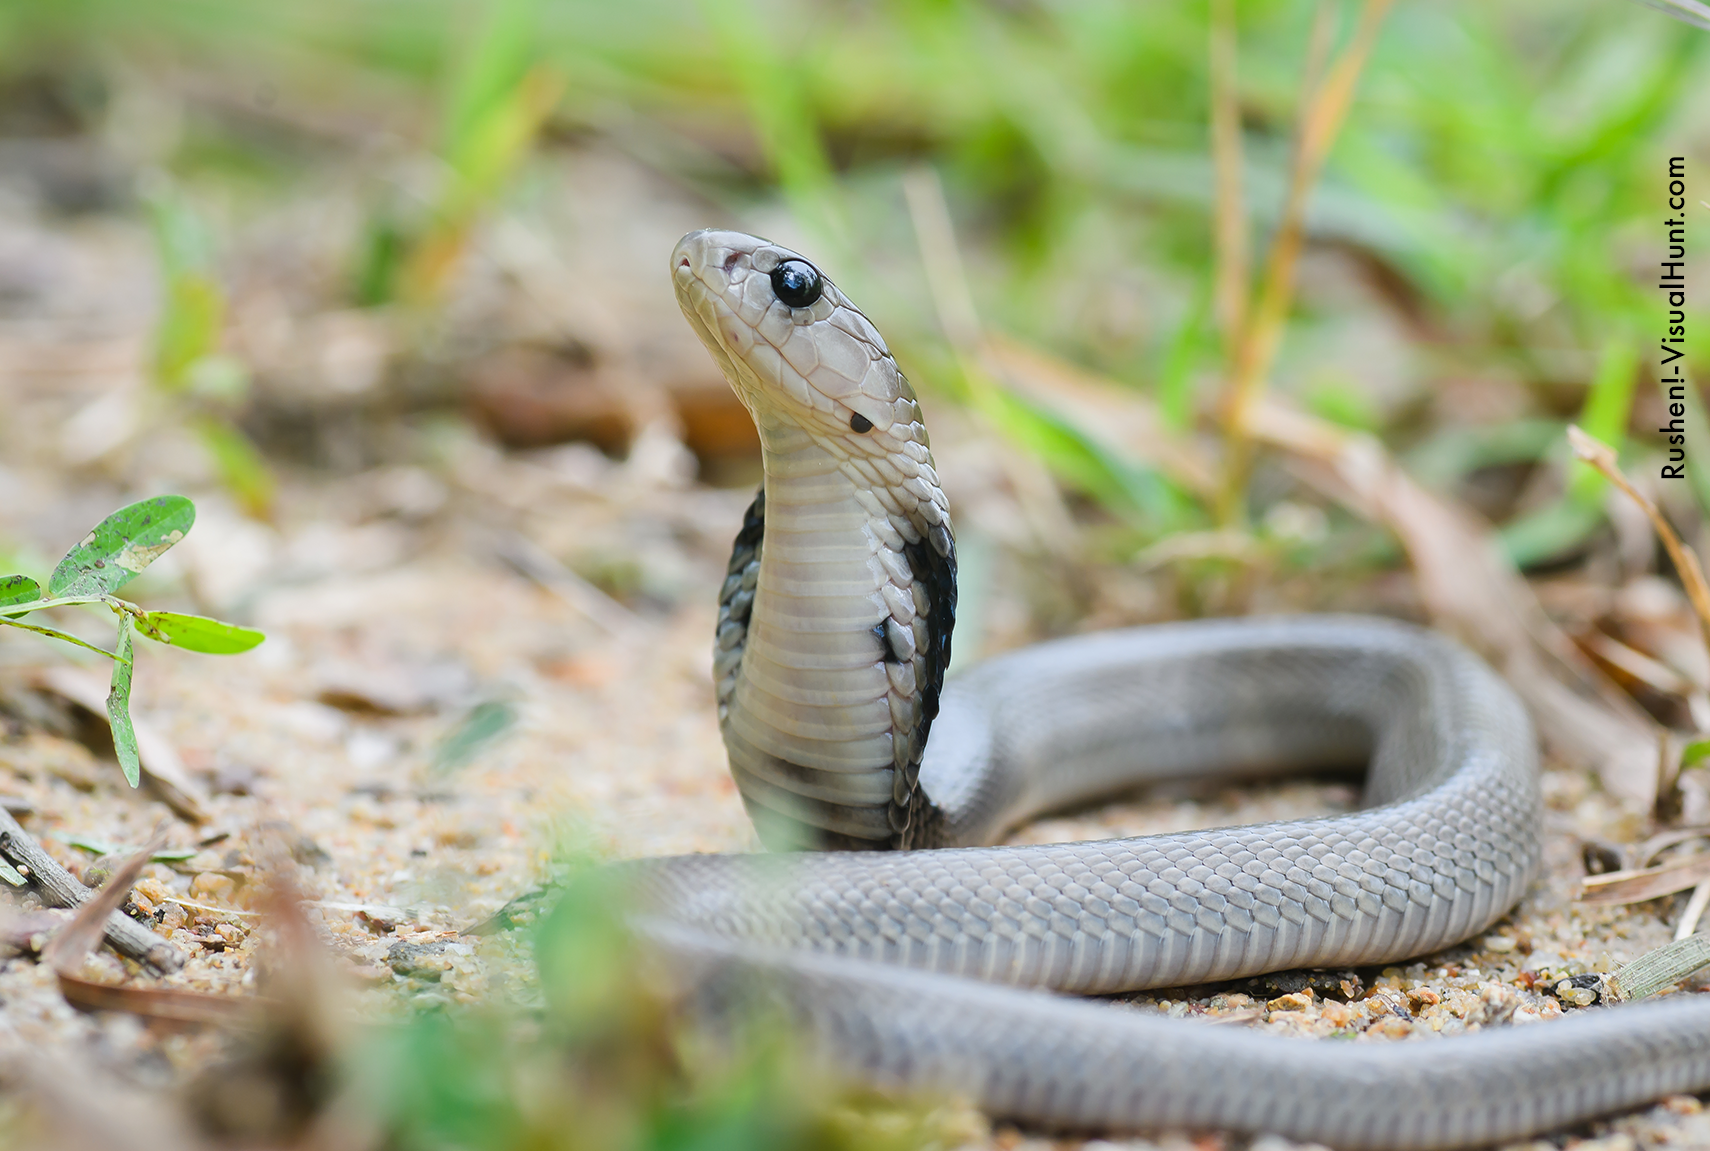 Cobras exóticas dos EUA são encontradas em casa no interior de SP